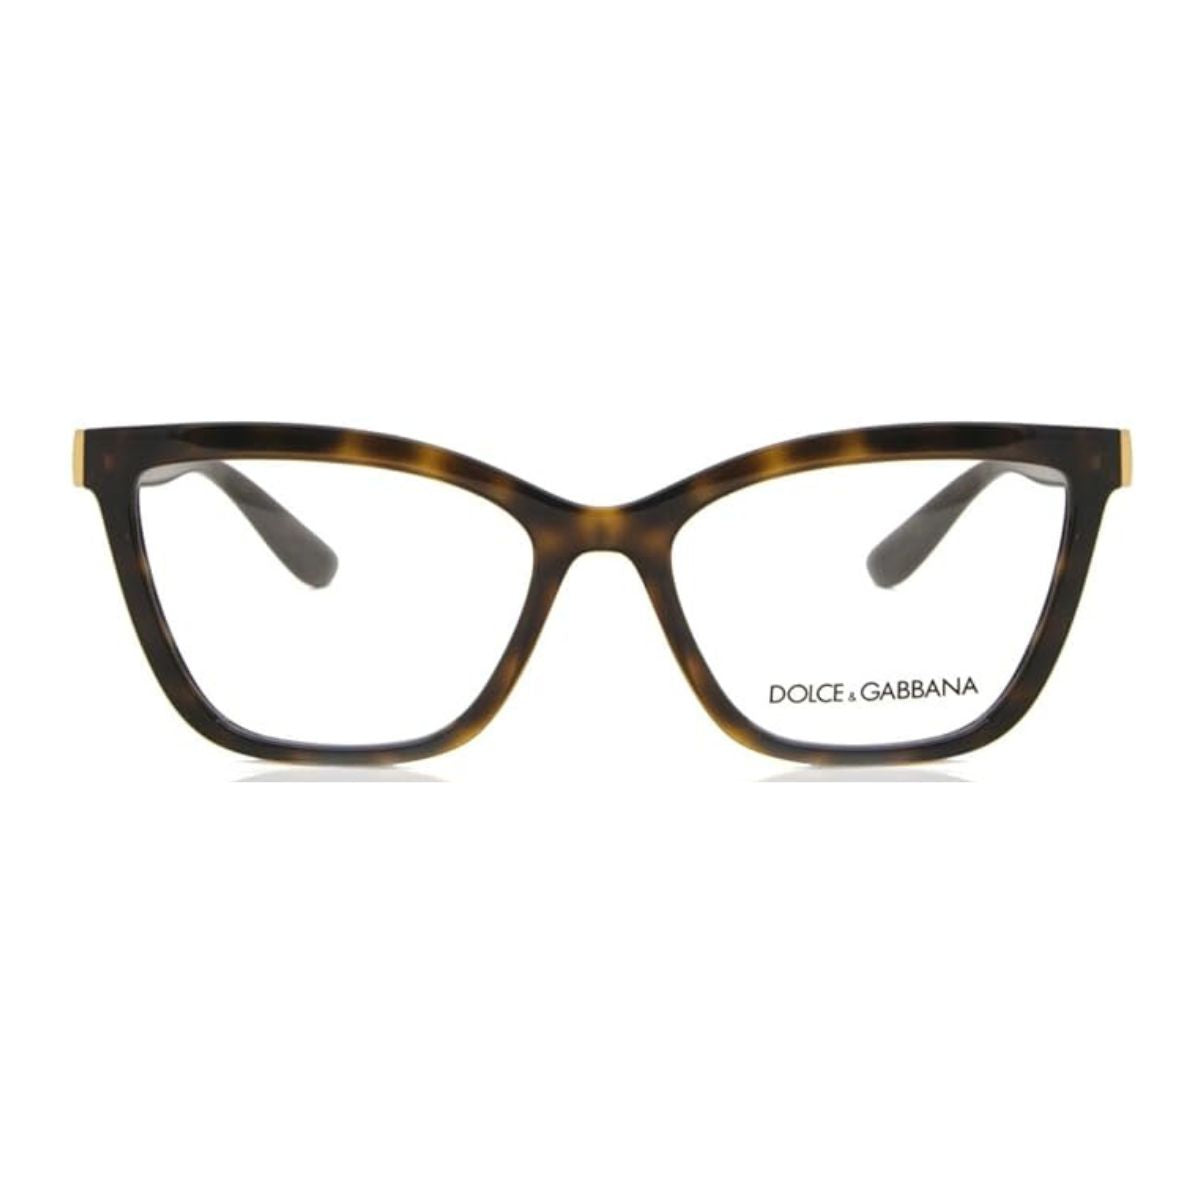 "Buy Dolce & Gabbana 5076 502 Optical Eyewear Frame For Women's At Optorium"